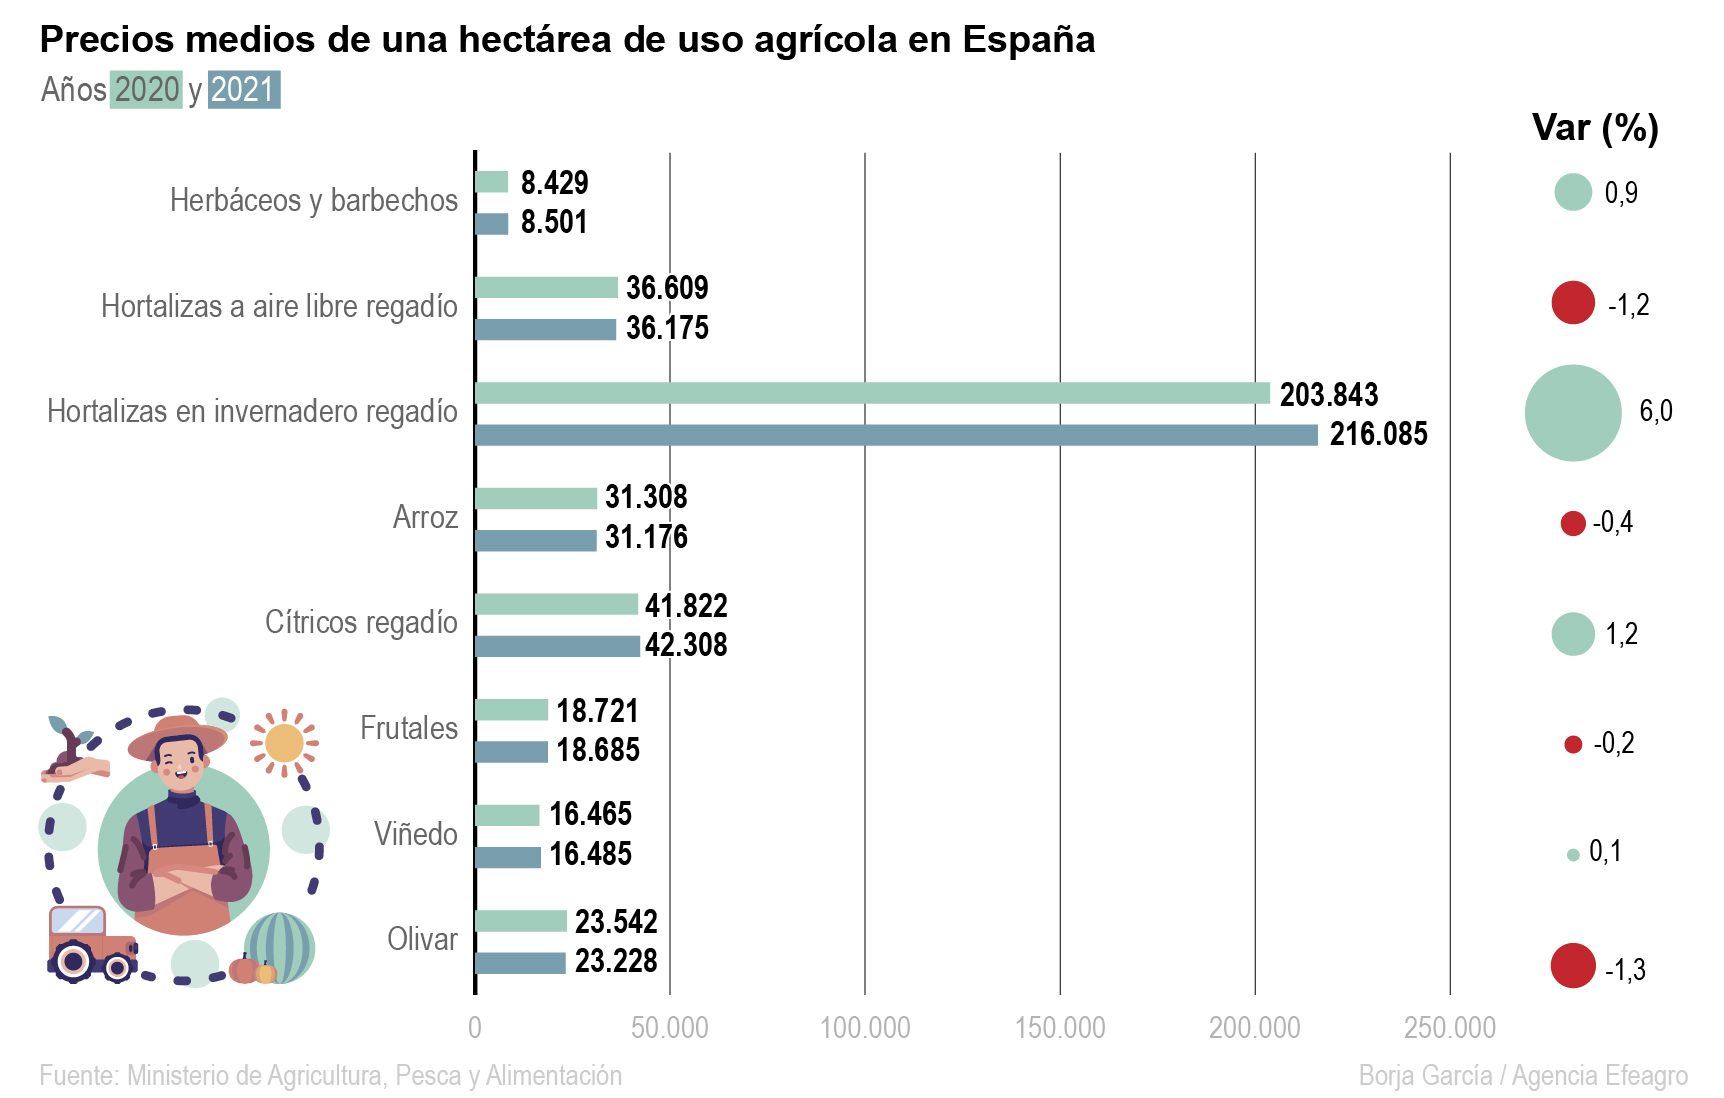 Infografía de cultivos nacionales 2021 y 2022. Efeagro/Borja García